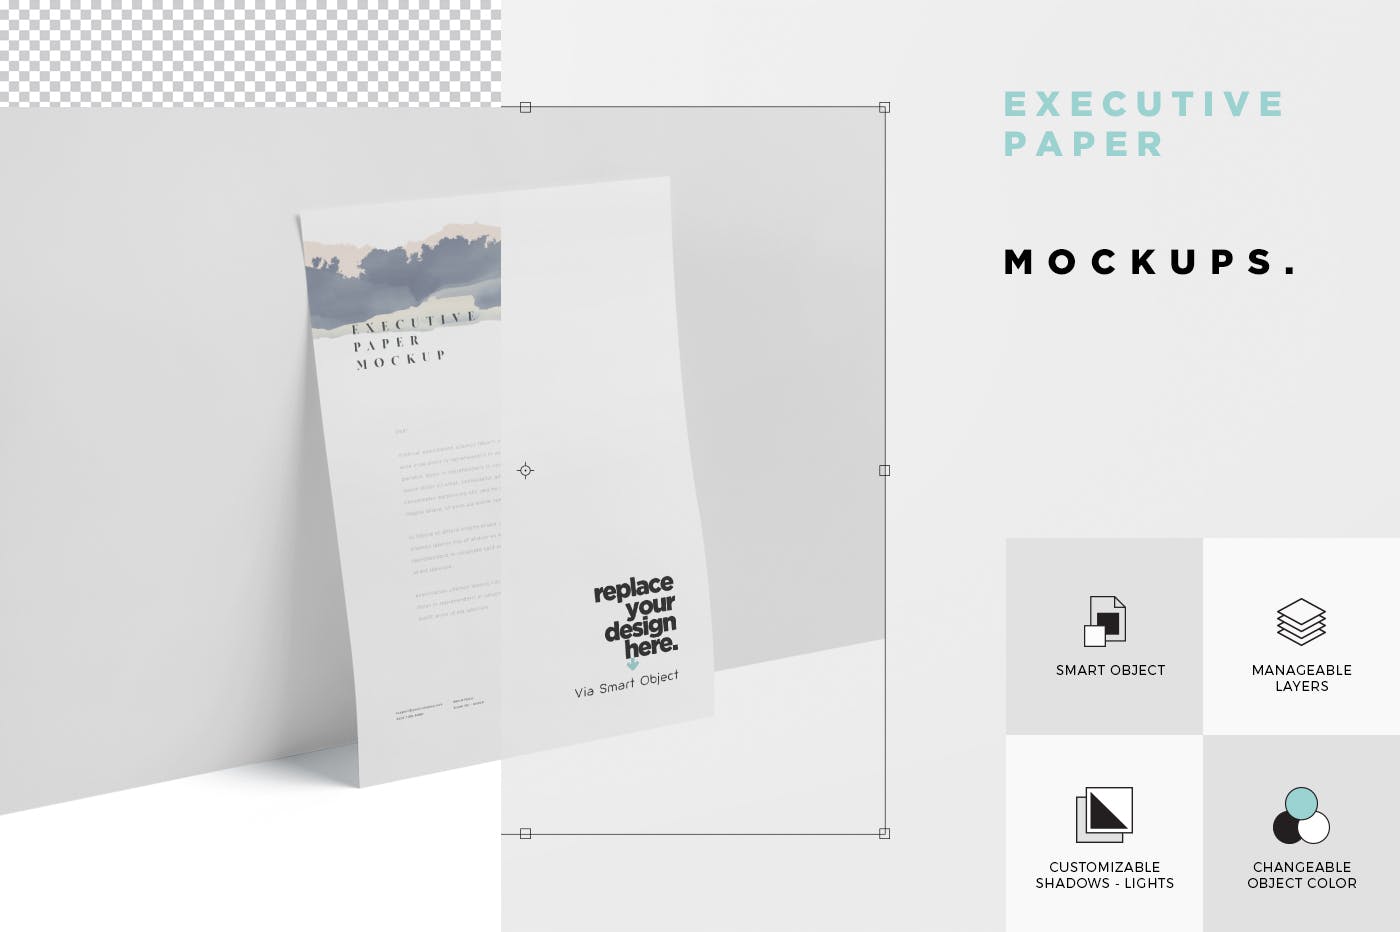 企业宣传单张设计效果图样机素材库精选 Executive Paper Mockup – 7×10 Inch Size插图(5)